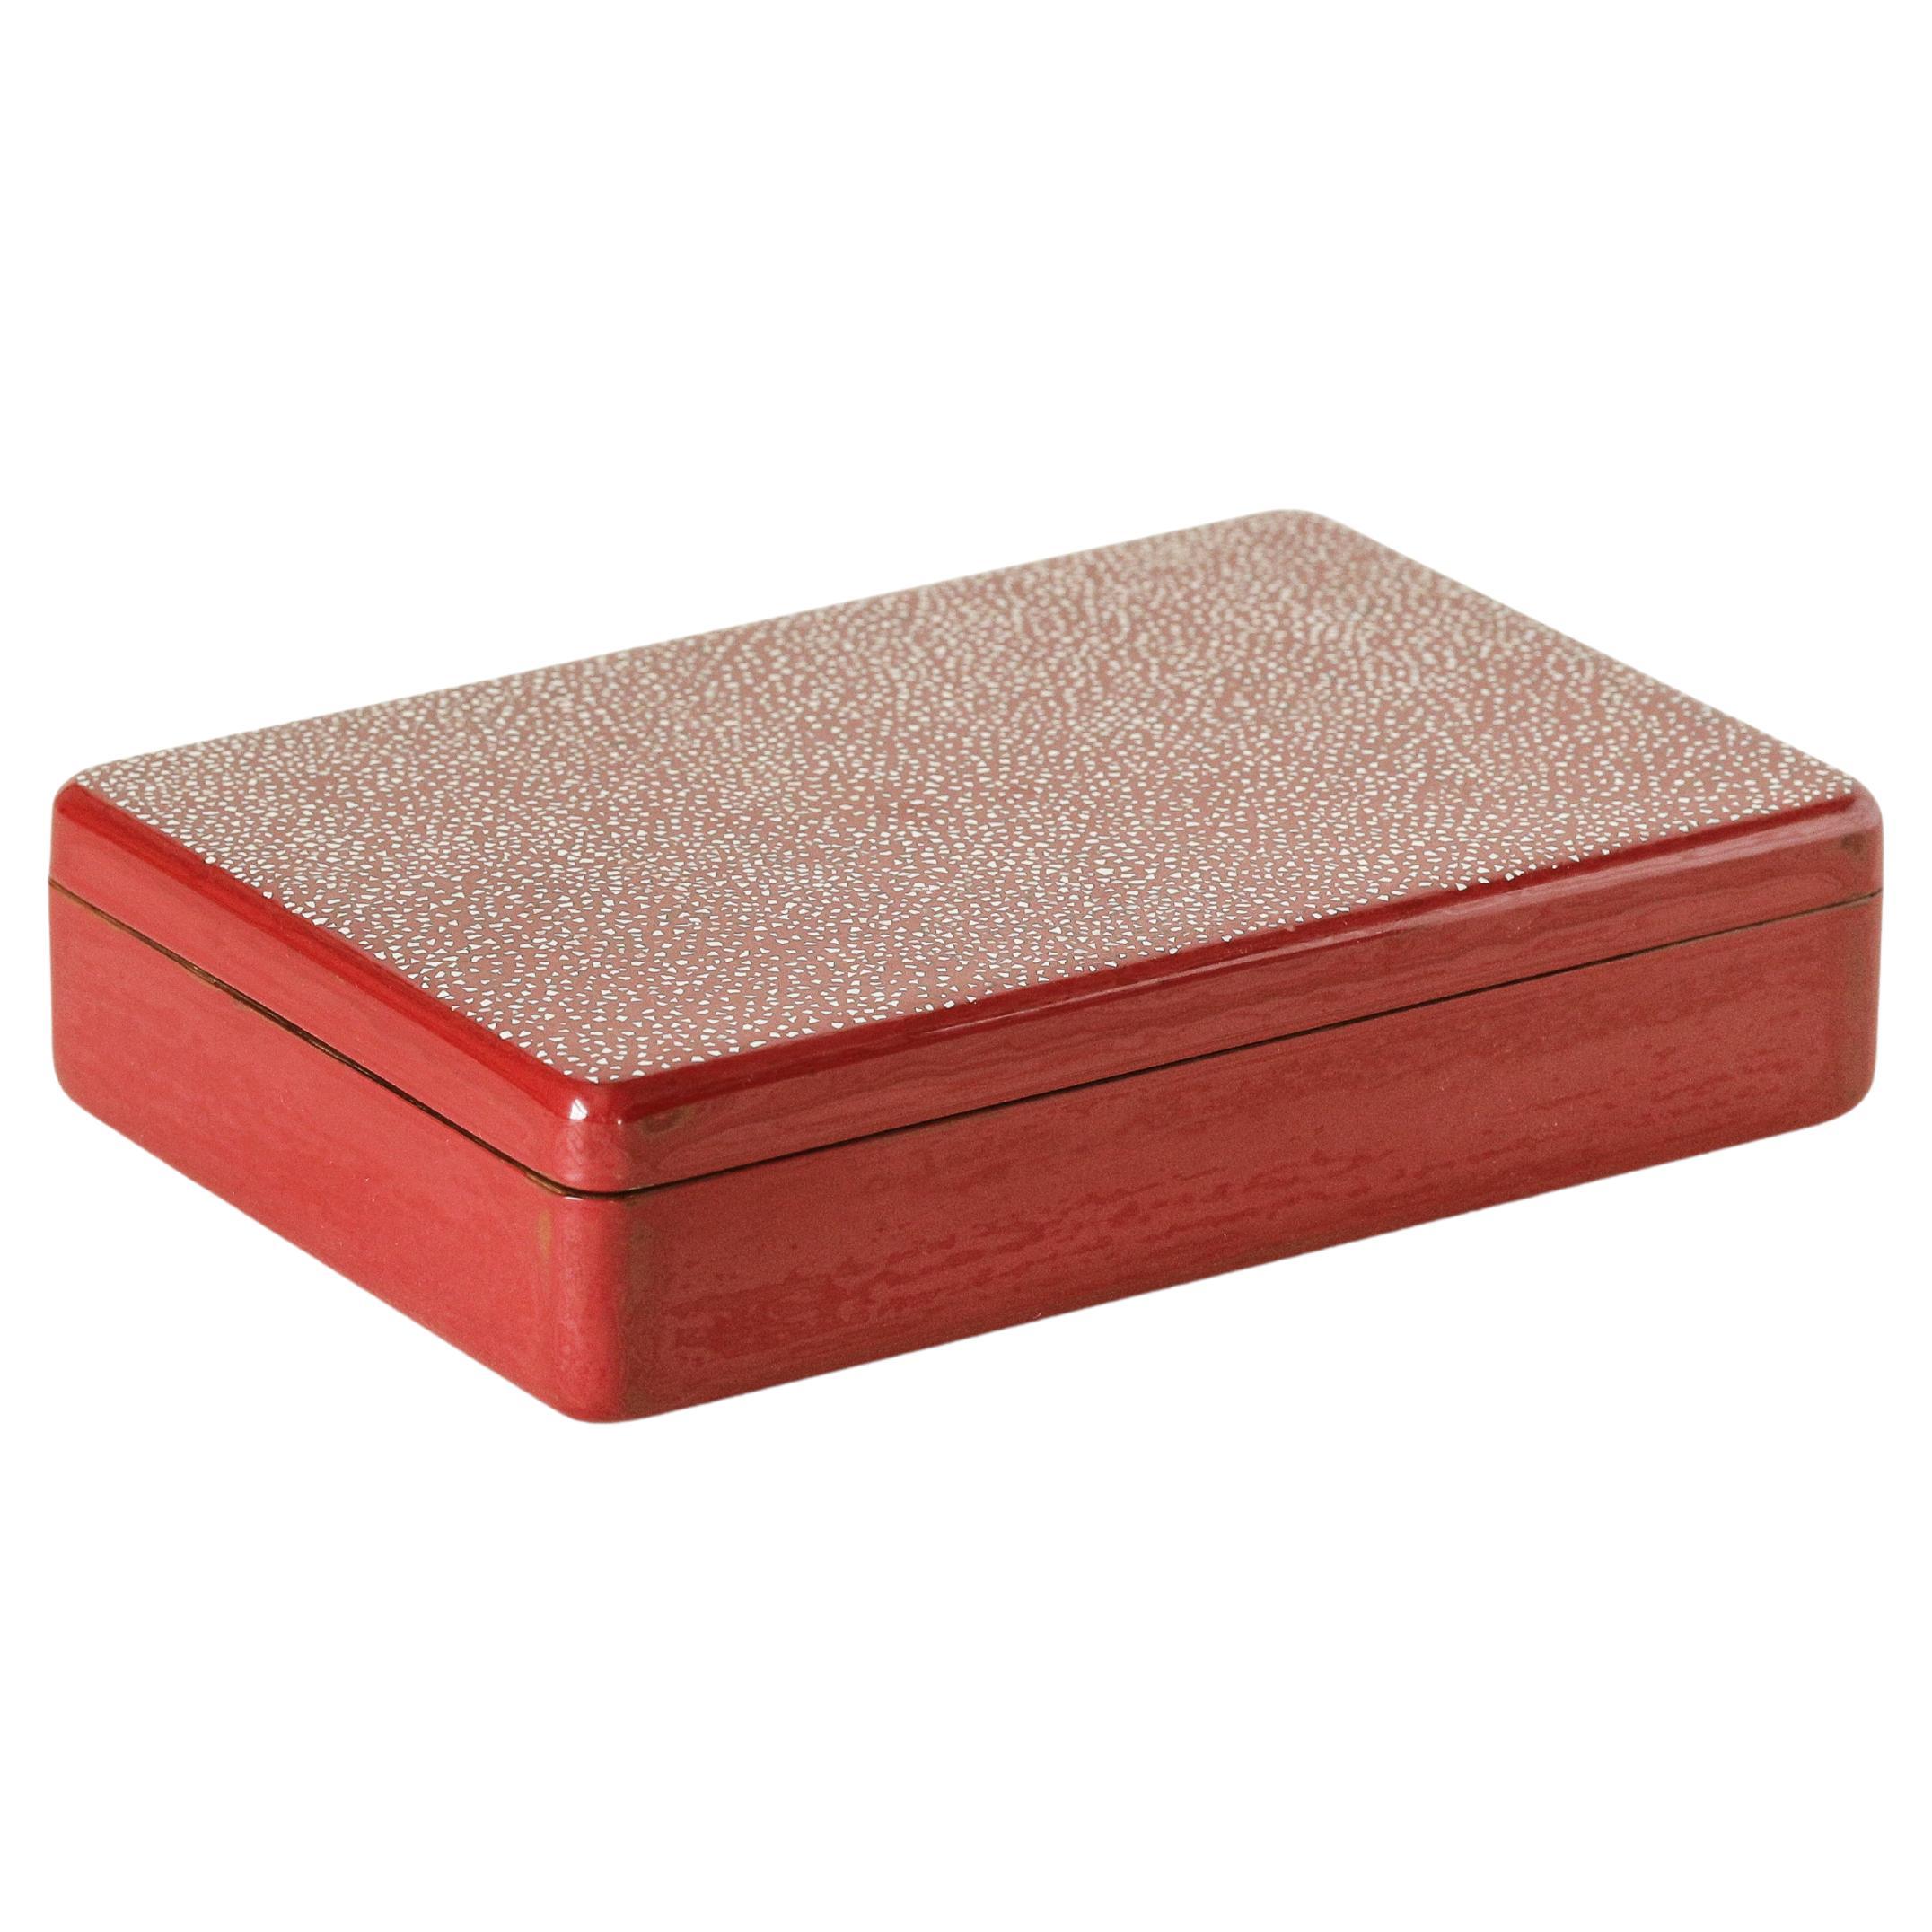 Urushi Allsorts-Schachtel aus natürlichem rotem Lack von Alexander Lamont, groß